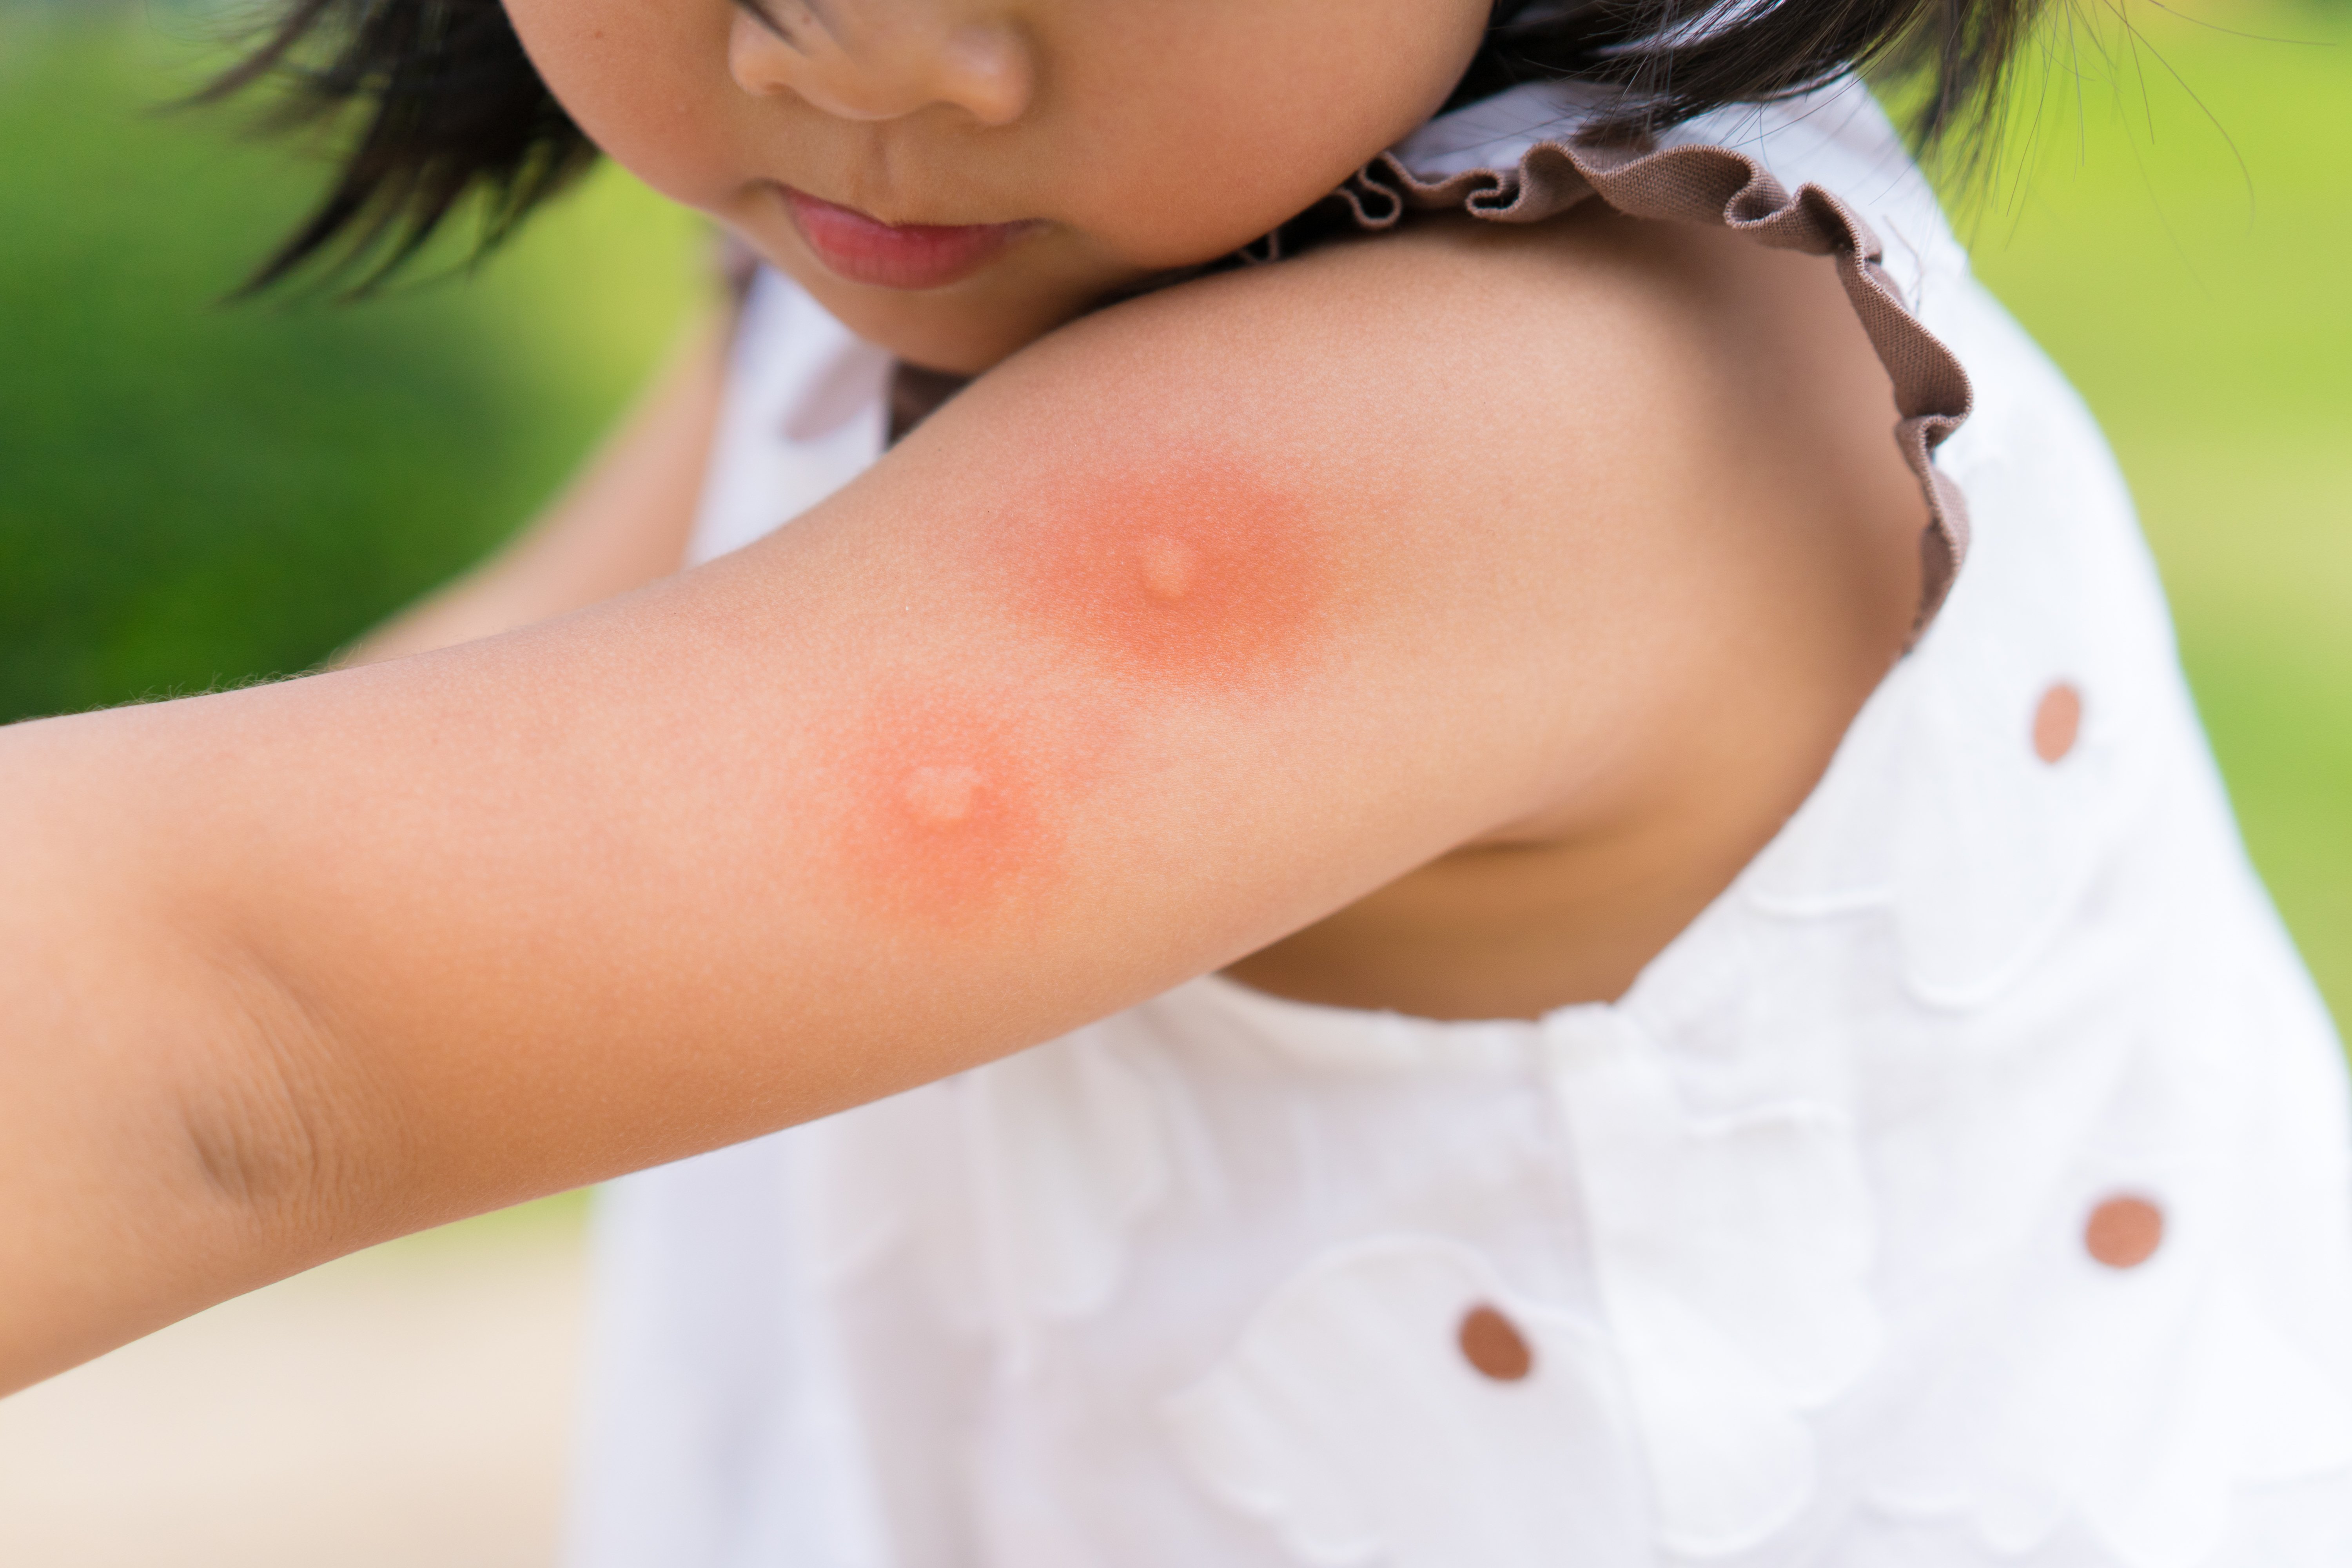 Pediatra explica como proteger os pequenos que estão mais suscetíveis a complicações causadas por essa doença